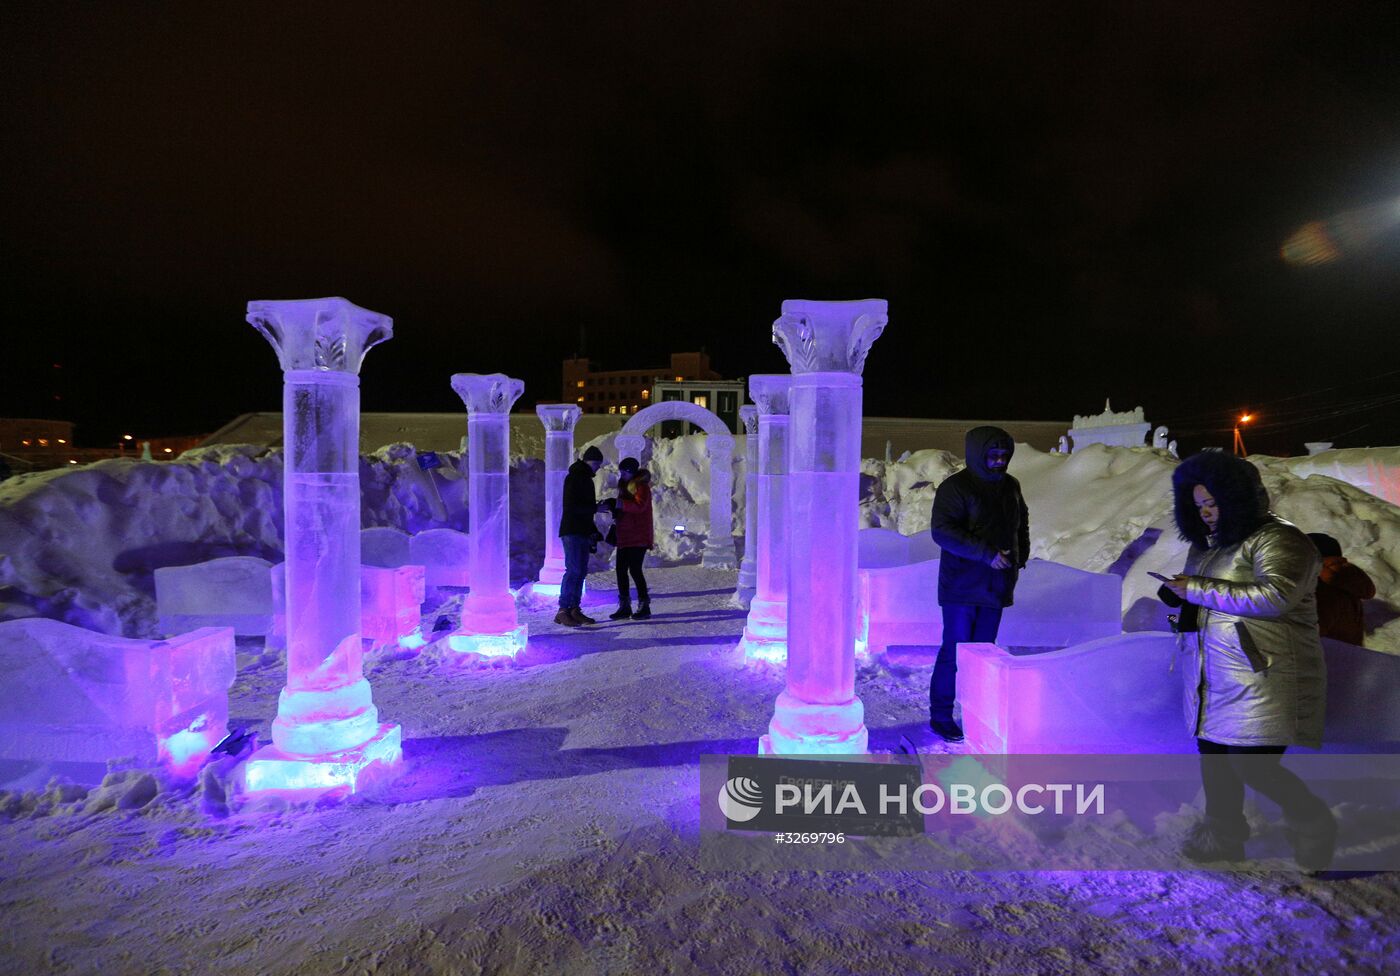 Ледовый город "Гиперборея в Хибинах" и "Снежная деревня" в Мурманской области